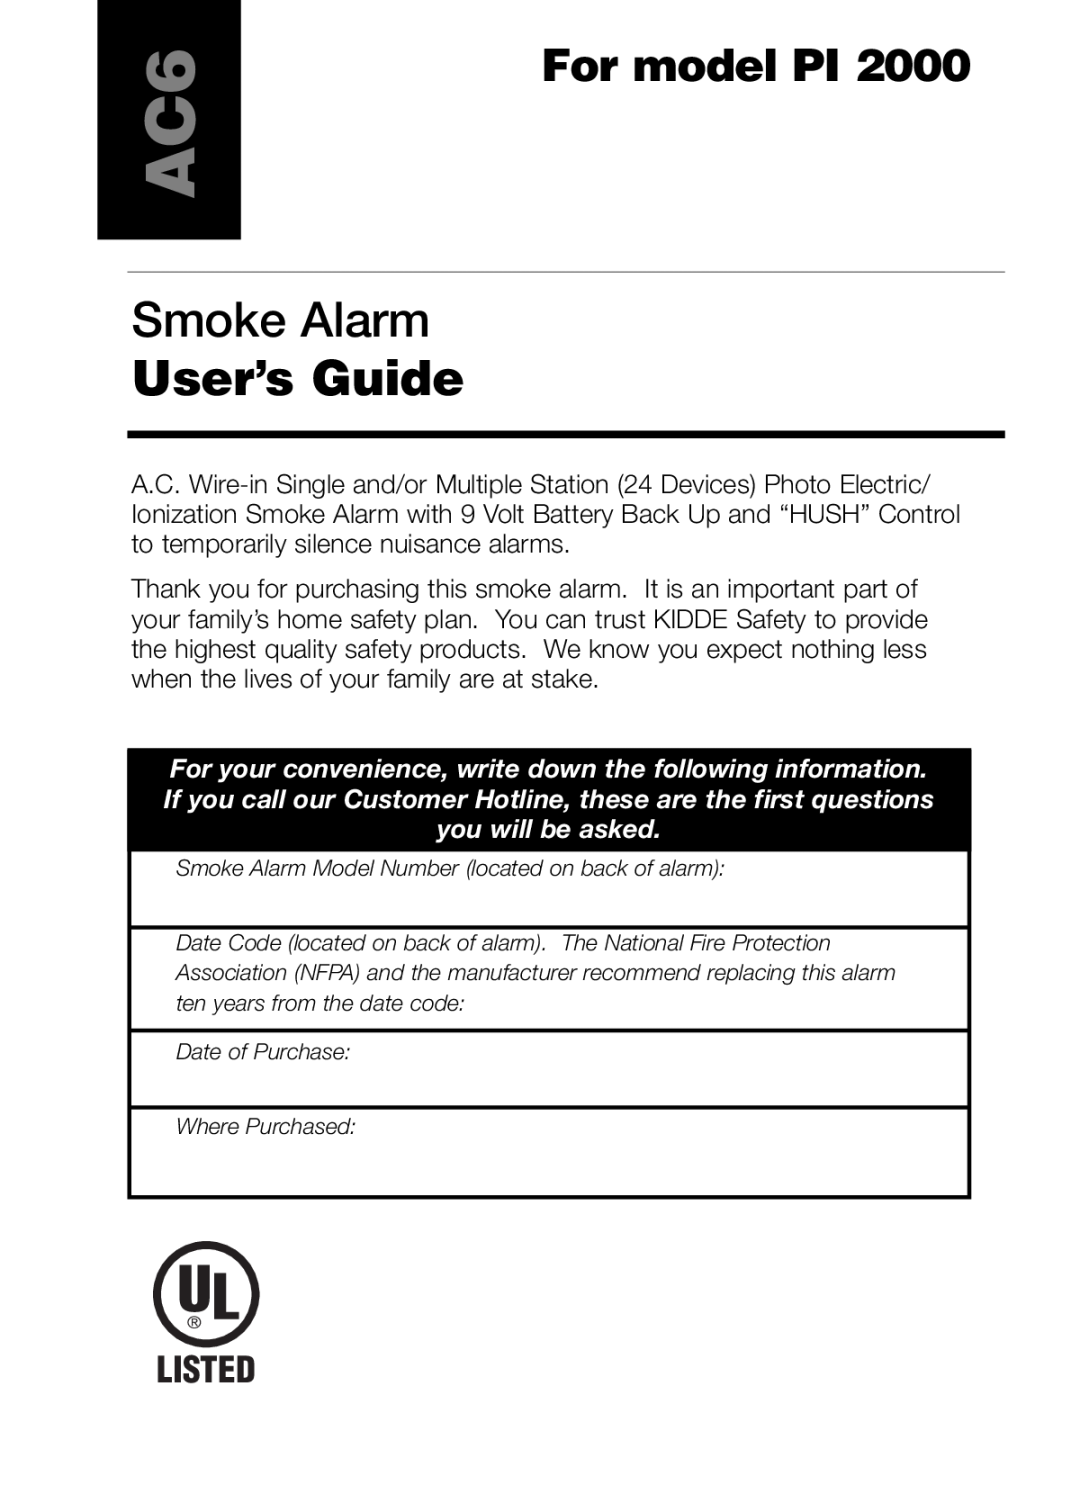 Kidde PI 2000 manual Smoke Alarm, User’s Guide, For model PI, Listed 